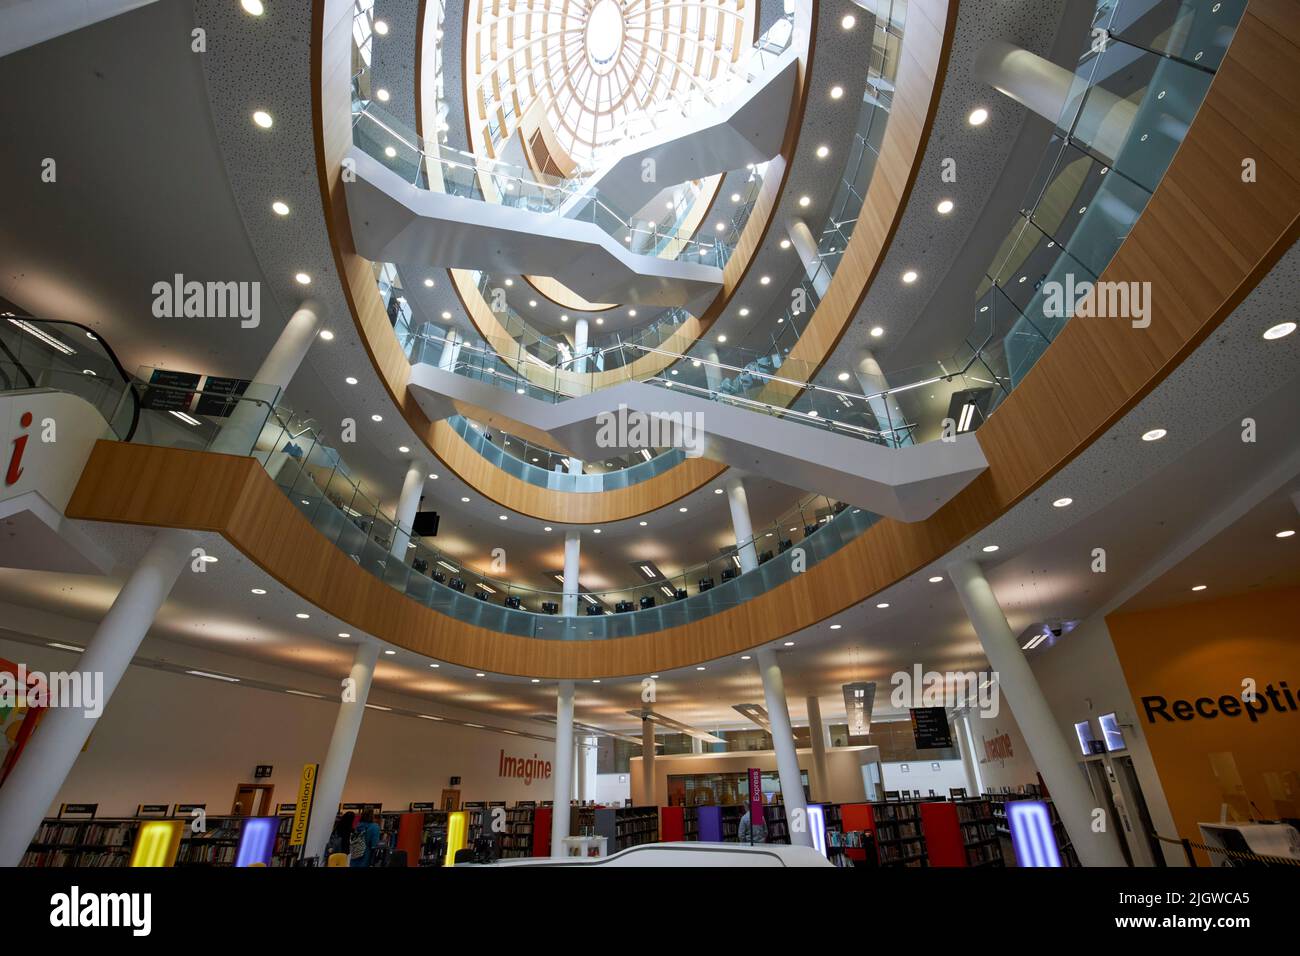 Intérieur de l'atrium central de Liverpool Central Library merseyside england uk Banque D'Images